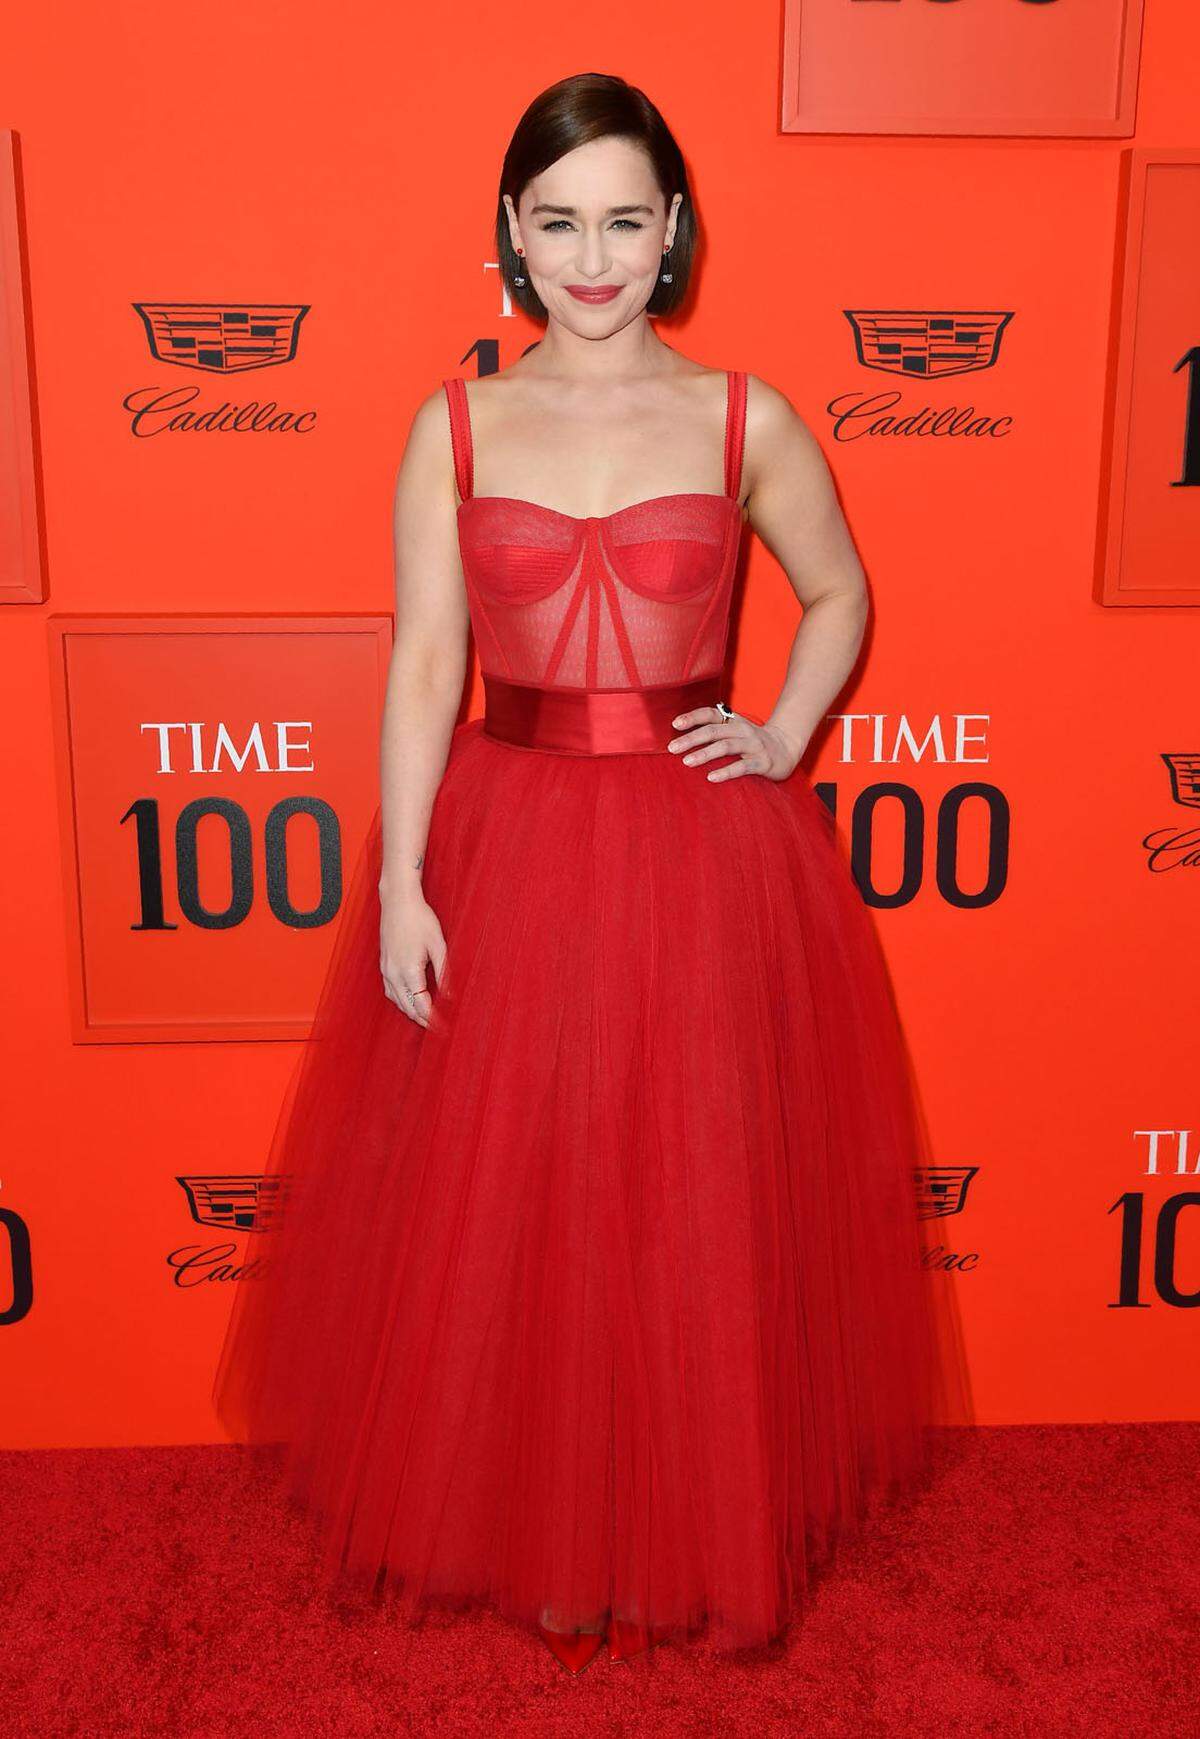 Die 100 einflussreichsten Menschen der Welt wurden vom "Time Magazine" in New York City mit einer Gala geehrt. Unter den Preisträgern fanden sich auch viele Promis wieder, darunter etwa Game of Thrones"-Star Emilia Clarke, die im roten Kleid von Dolce &amp; Gabbana erschien.    